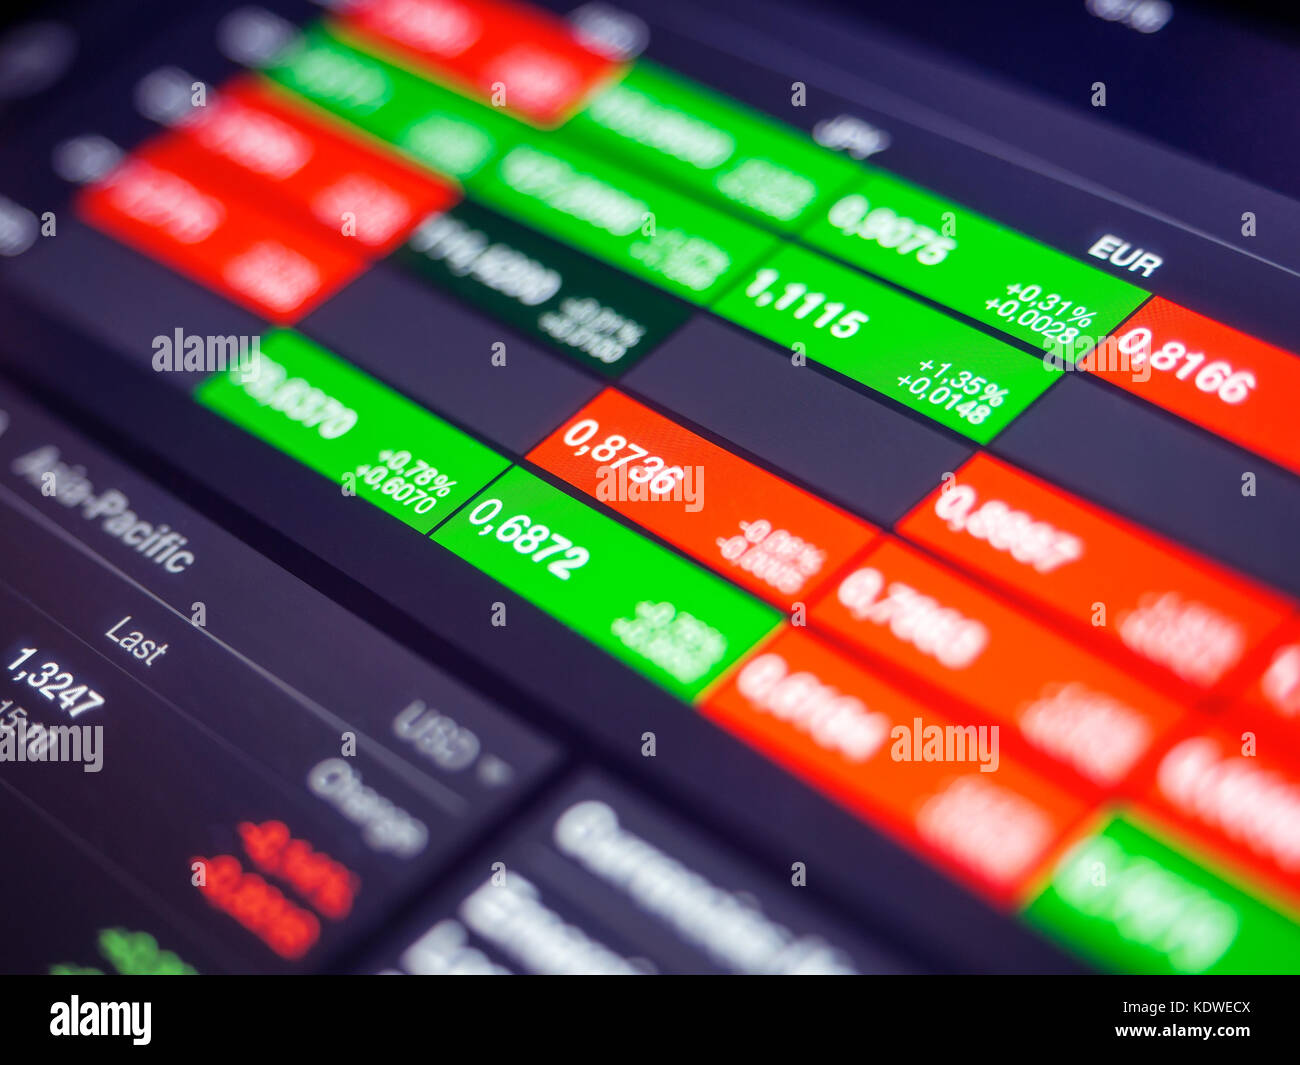 Digitale Währung Börsennotierung auf einem Tablet Bildschirm, geringe Tiefenschärfe Stockfoto